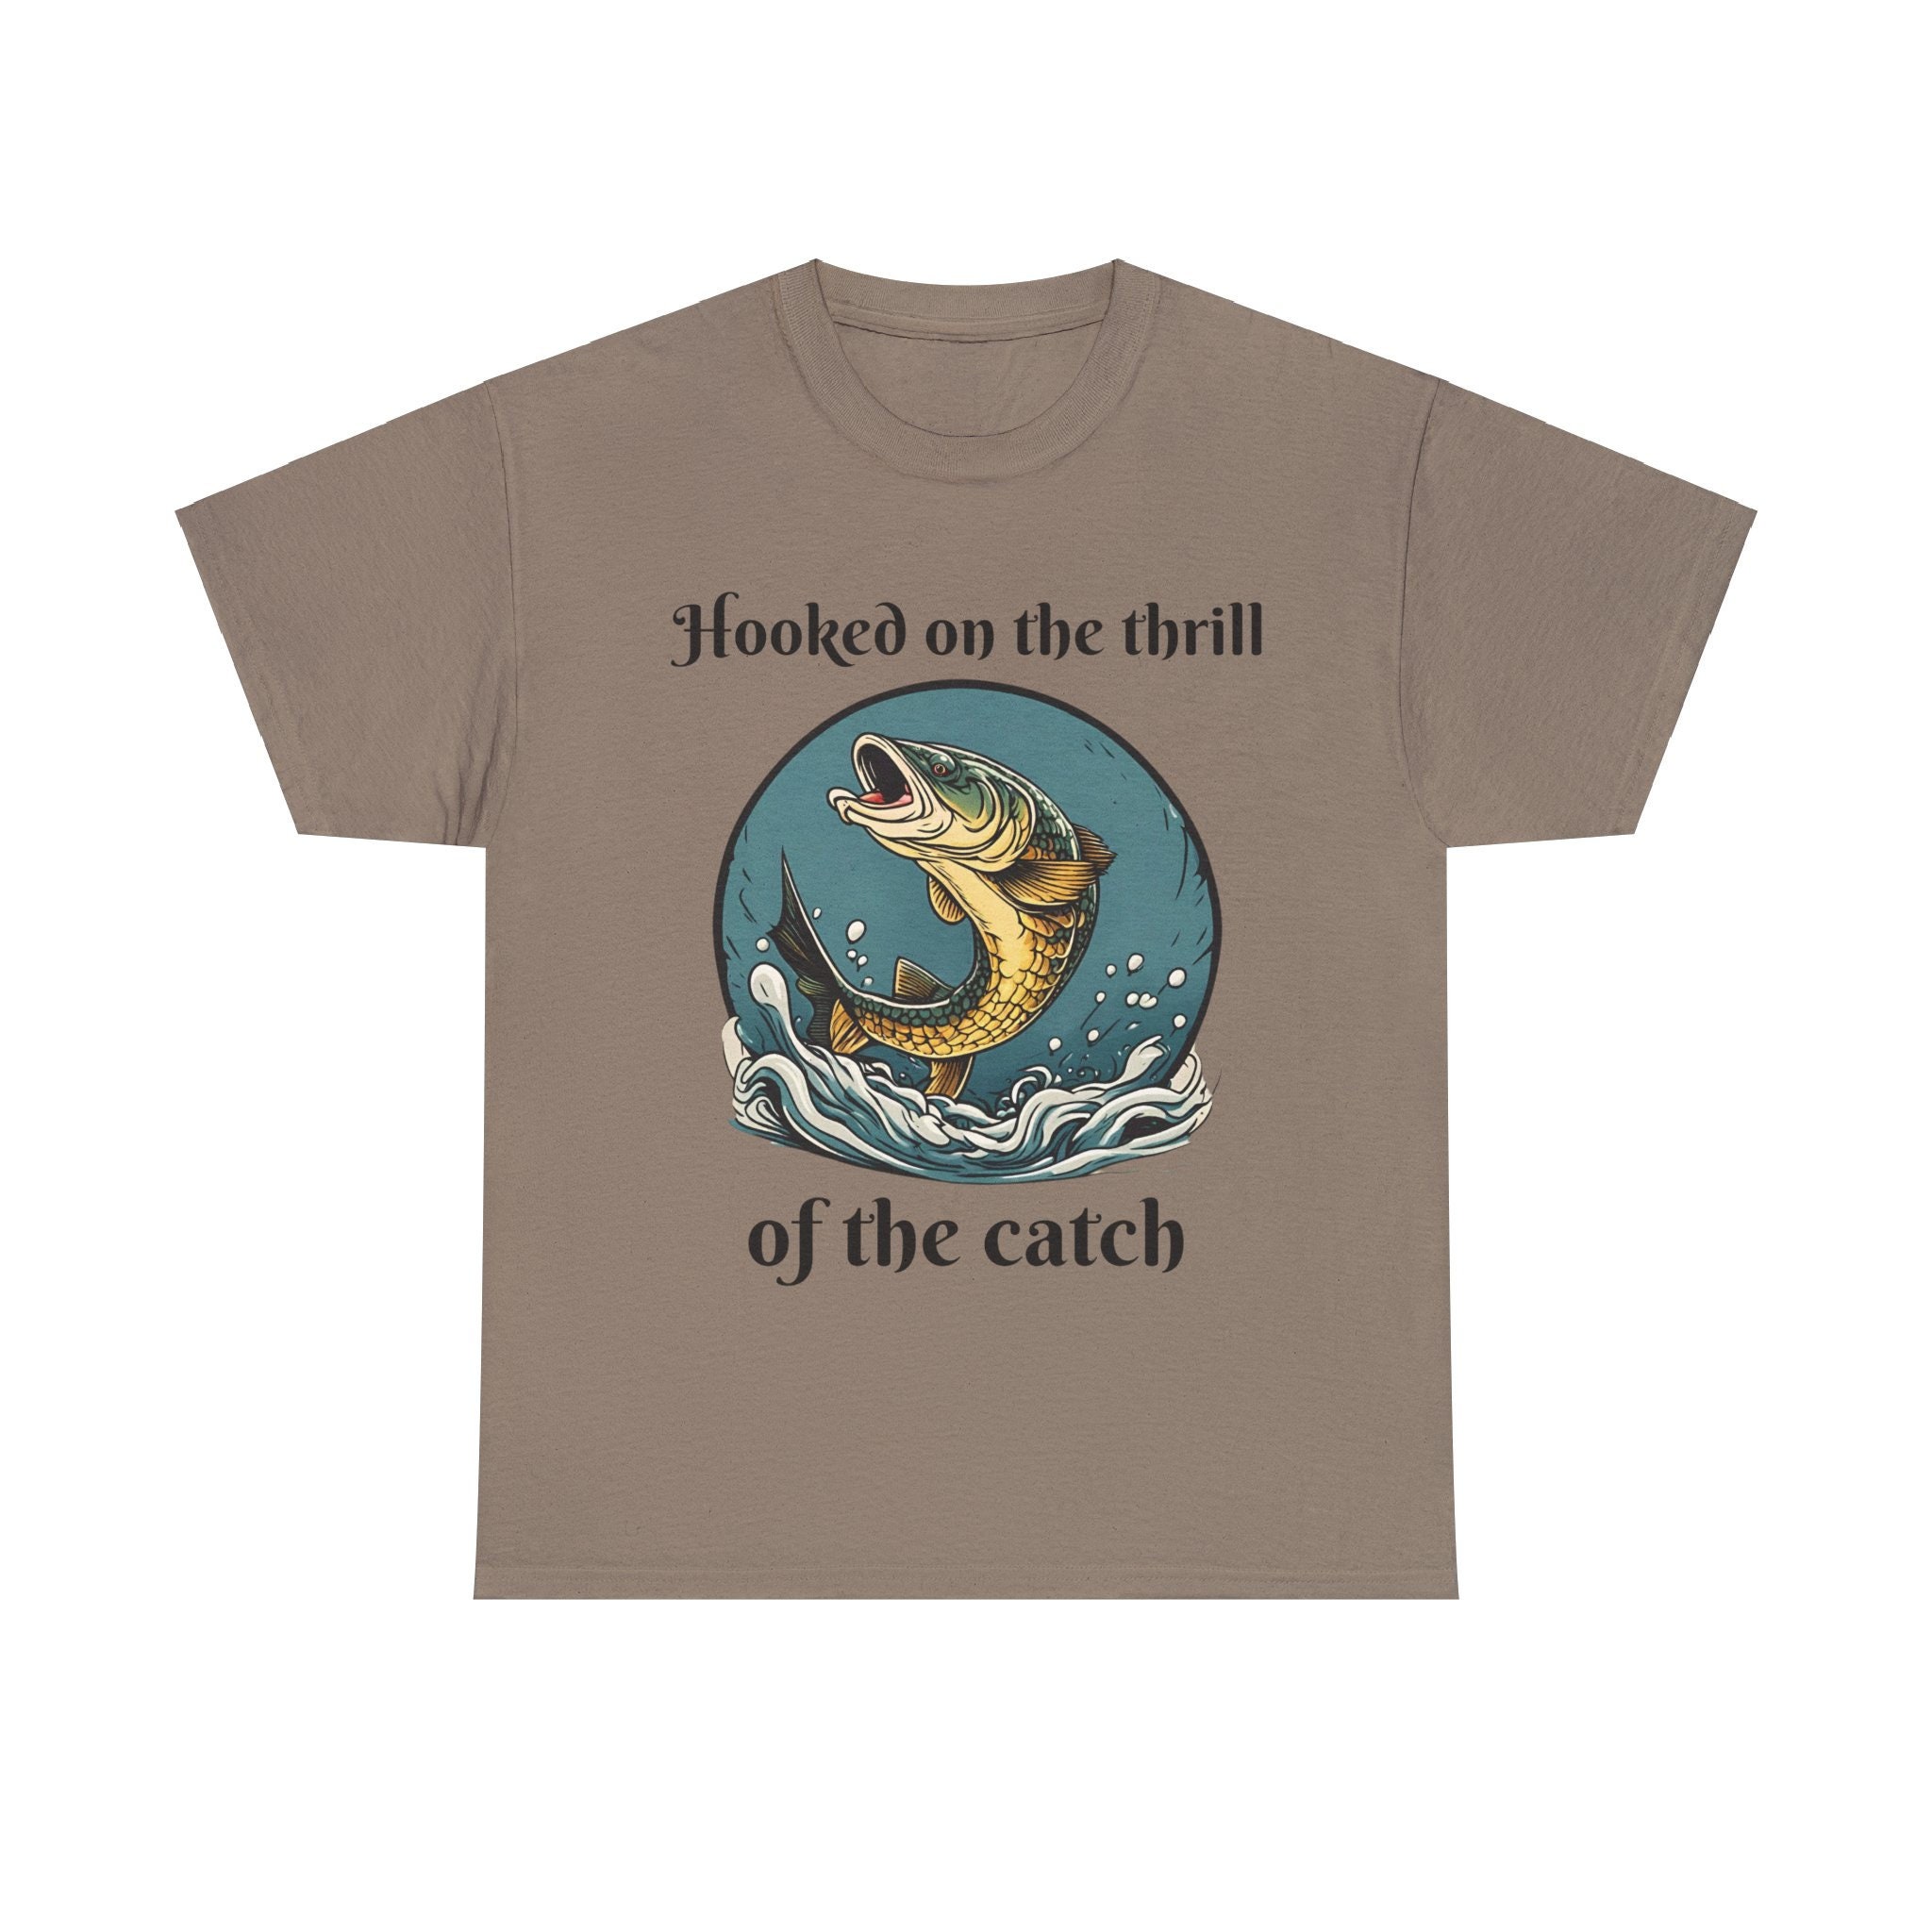 Personalized Fishing T-shirt Fisherman Trip Pike Fishing Shirt